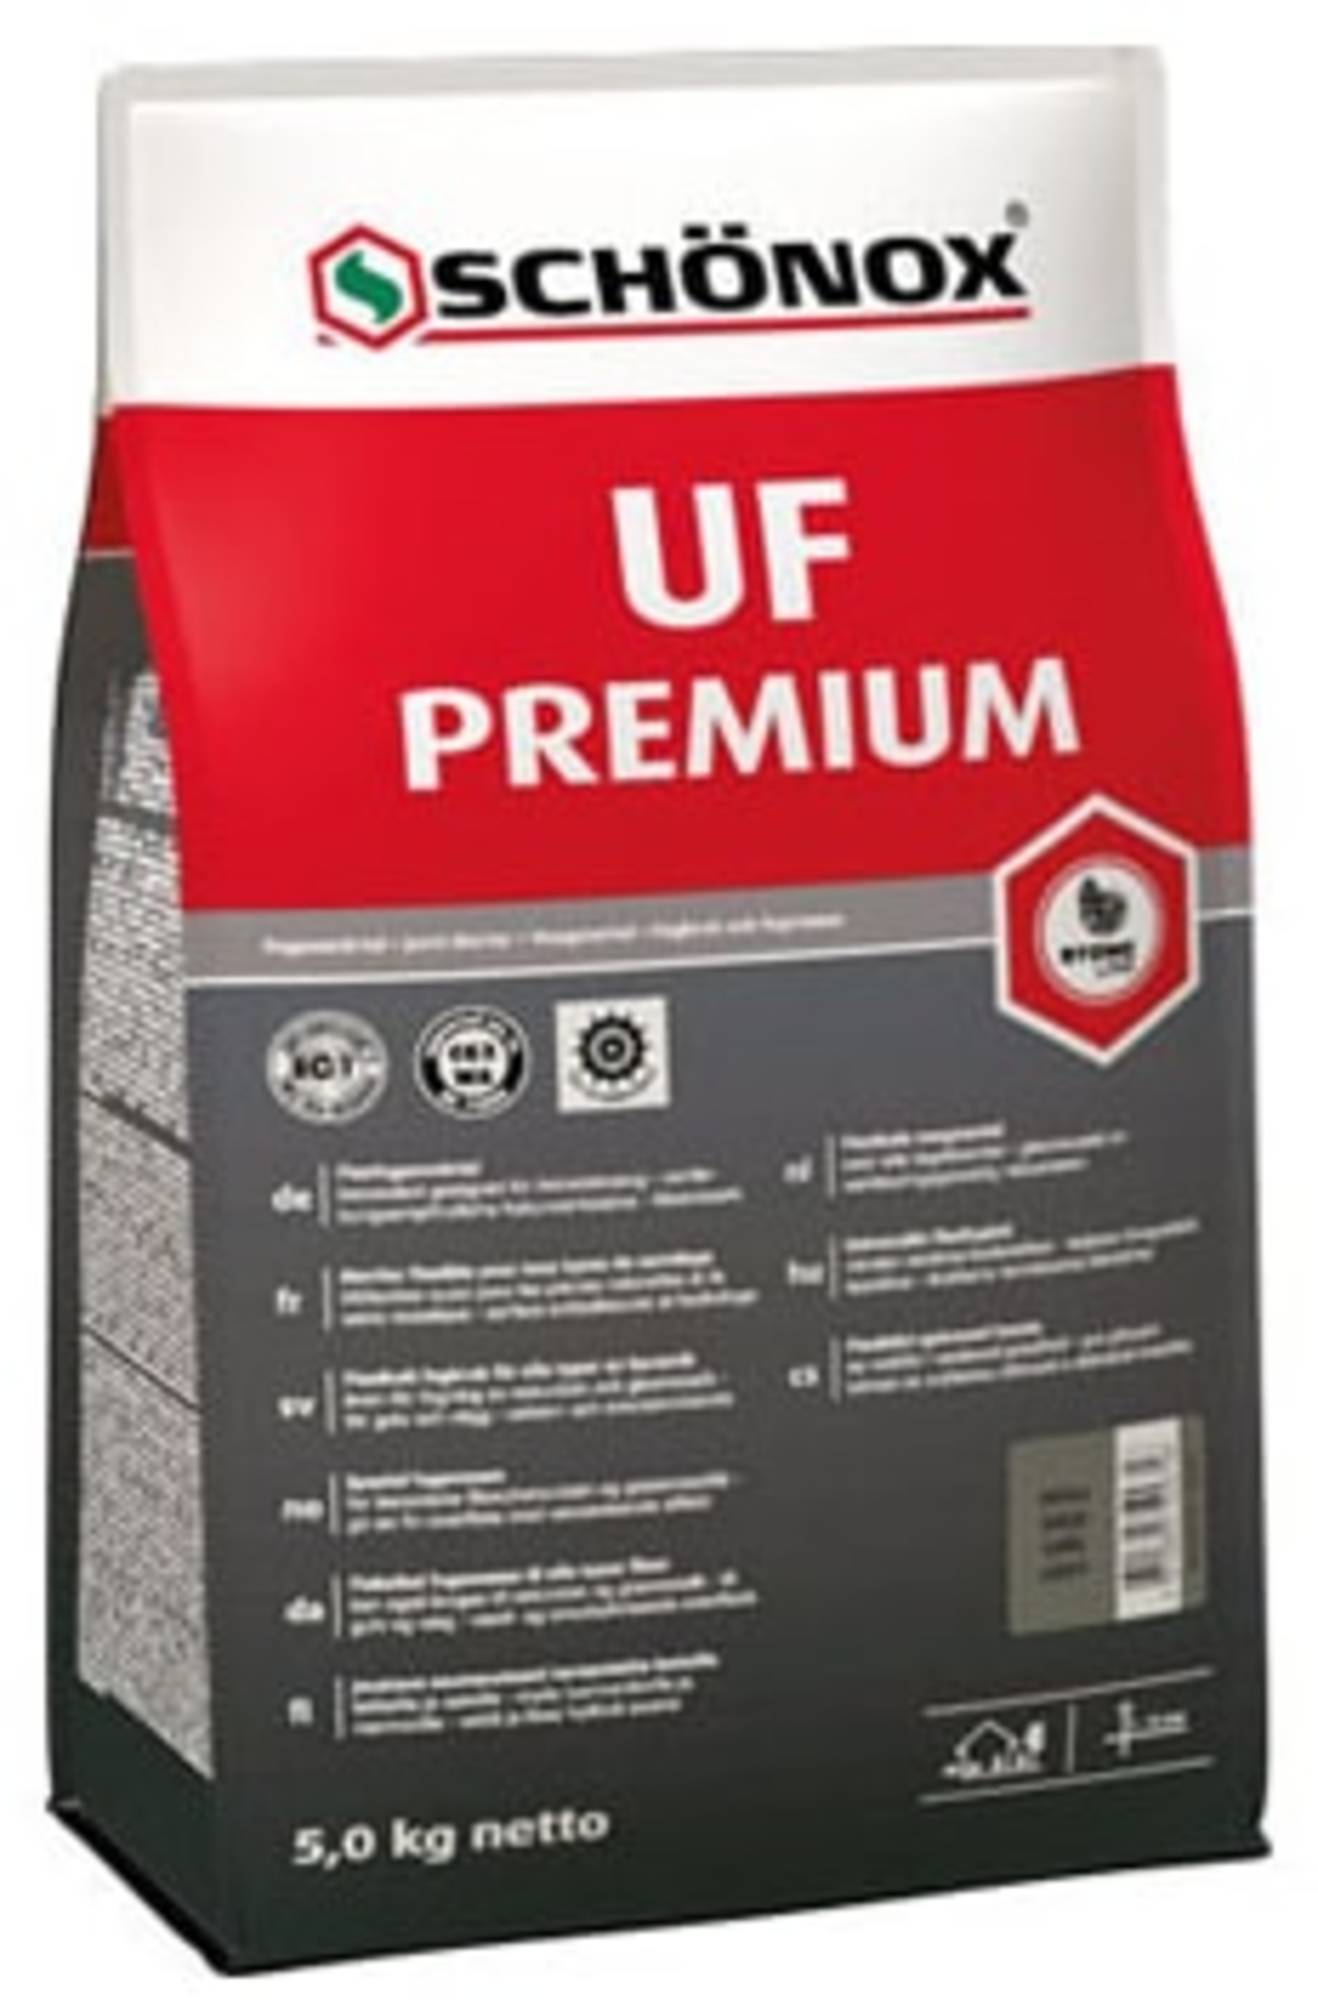 Schonox Uf-Premium Slibbare Universele Flexvoeg 5kg Zilvergrijs